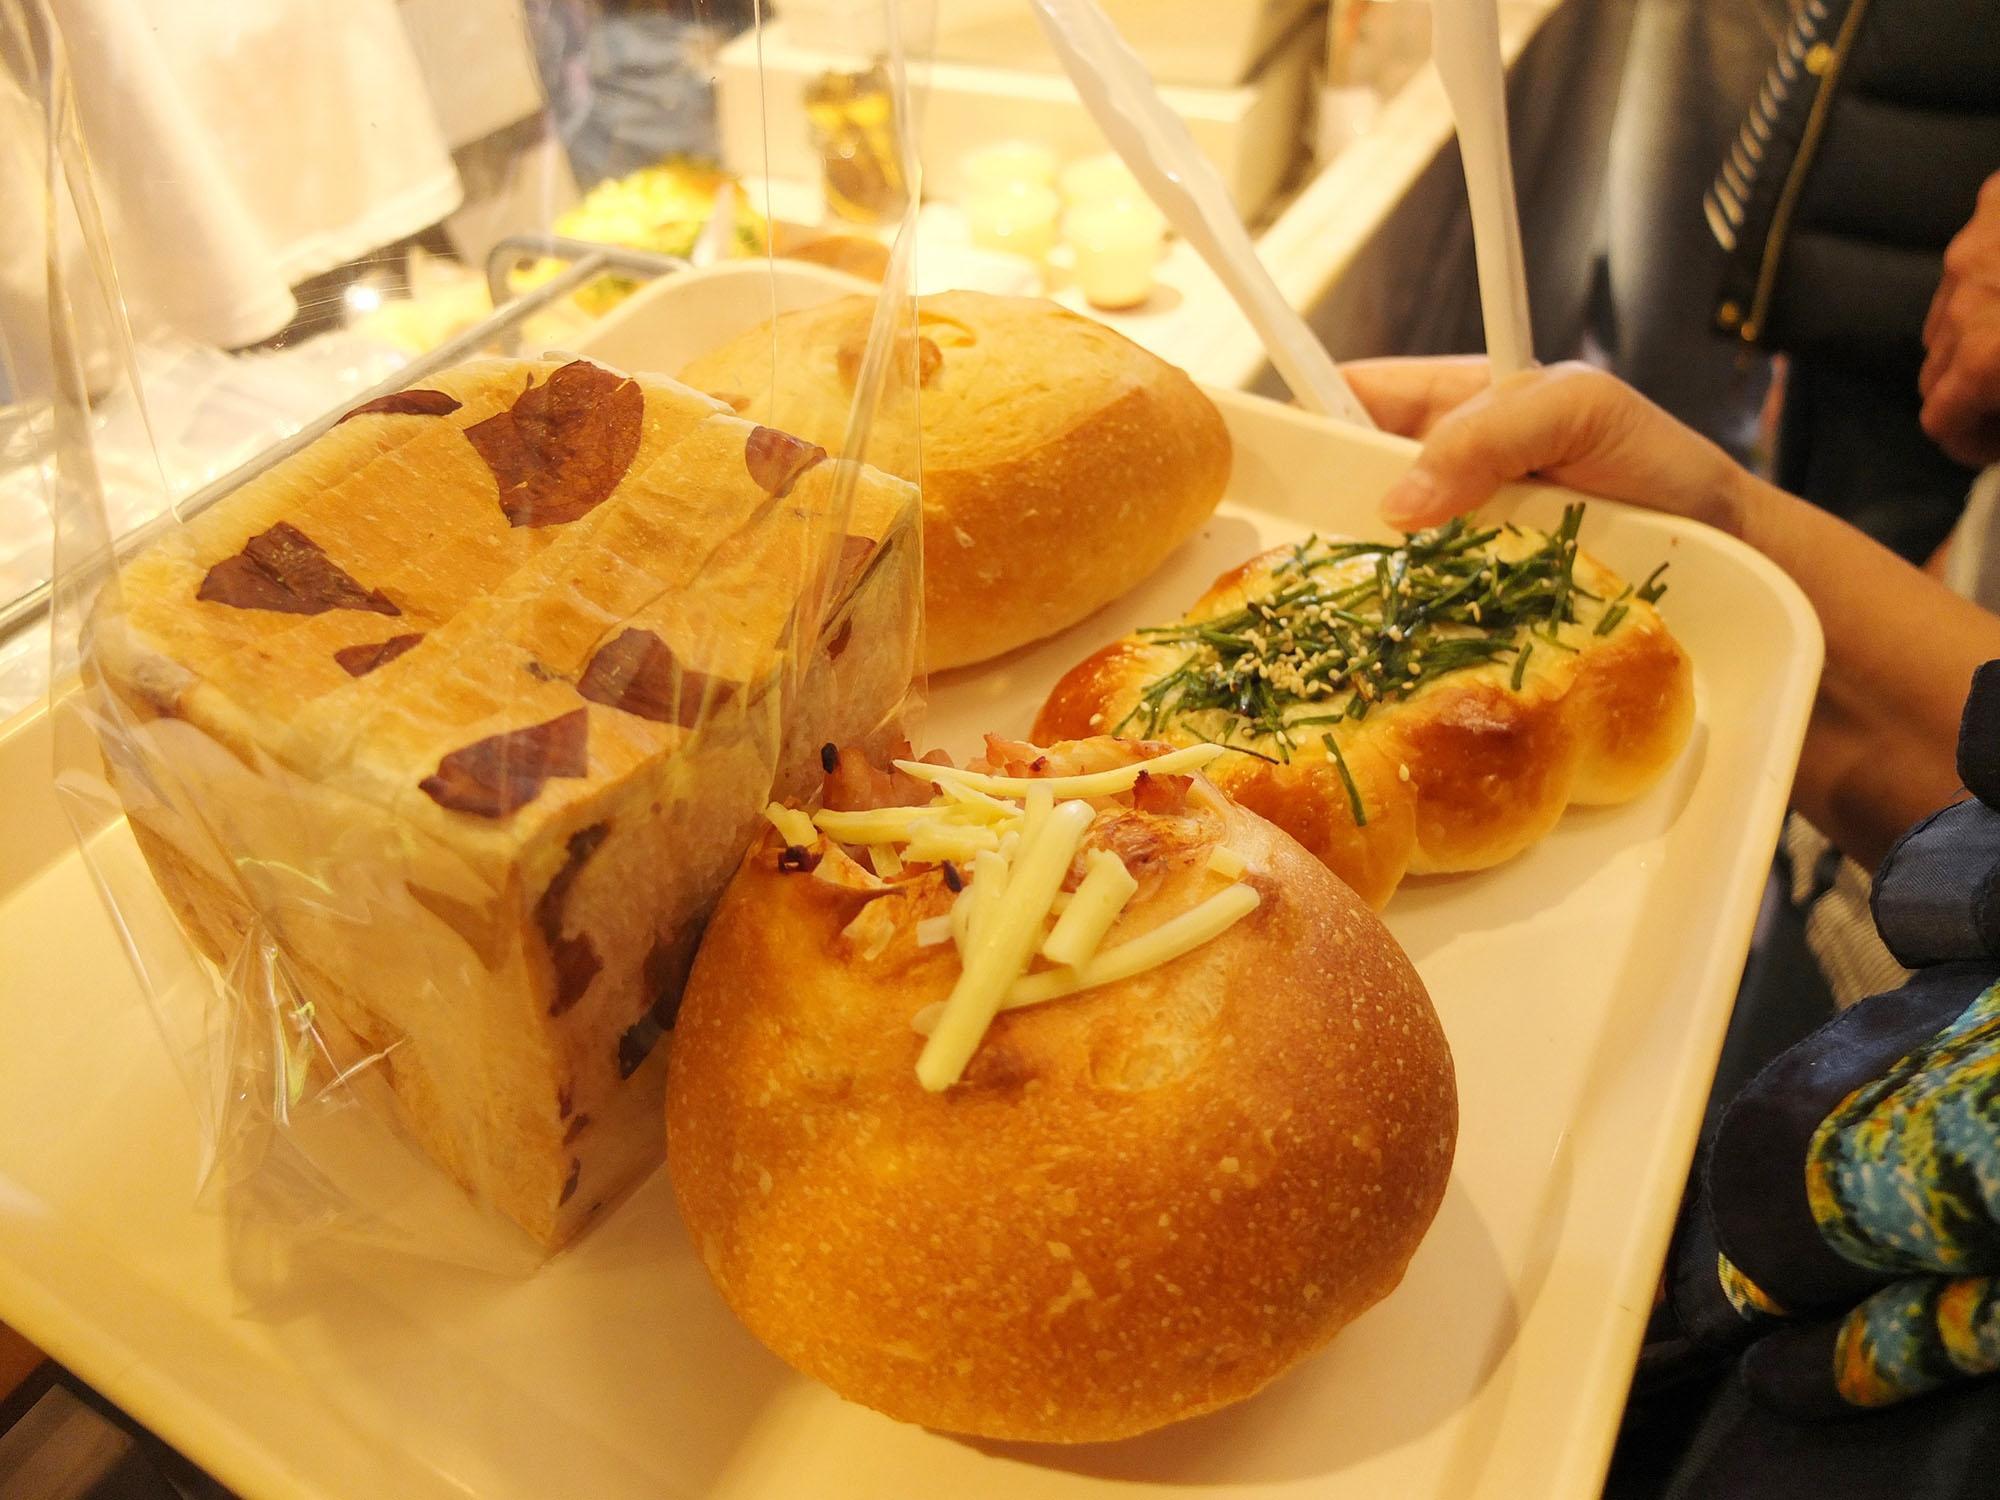 特に地元の農産物である水蓮を使用したパンは非常に人気があり